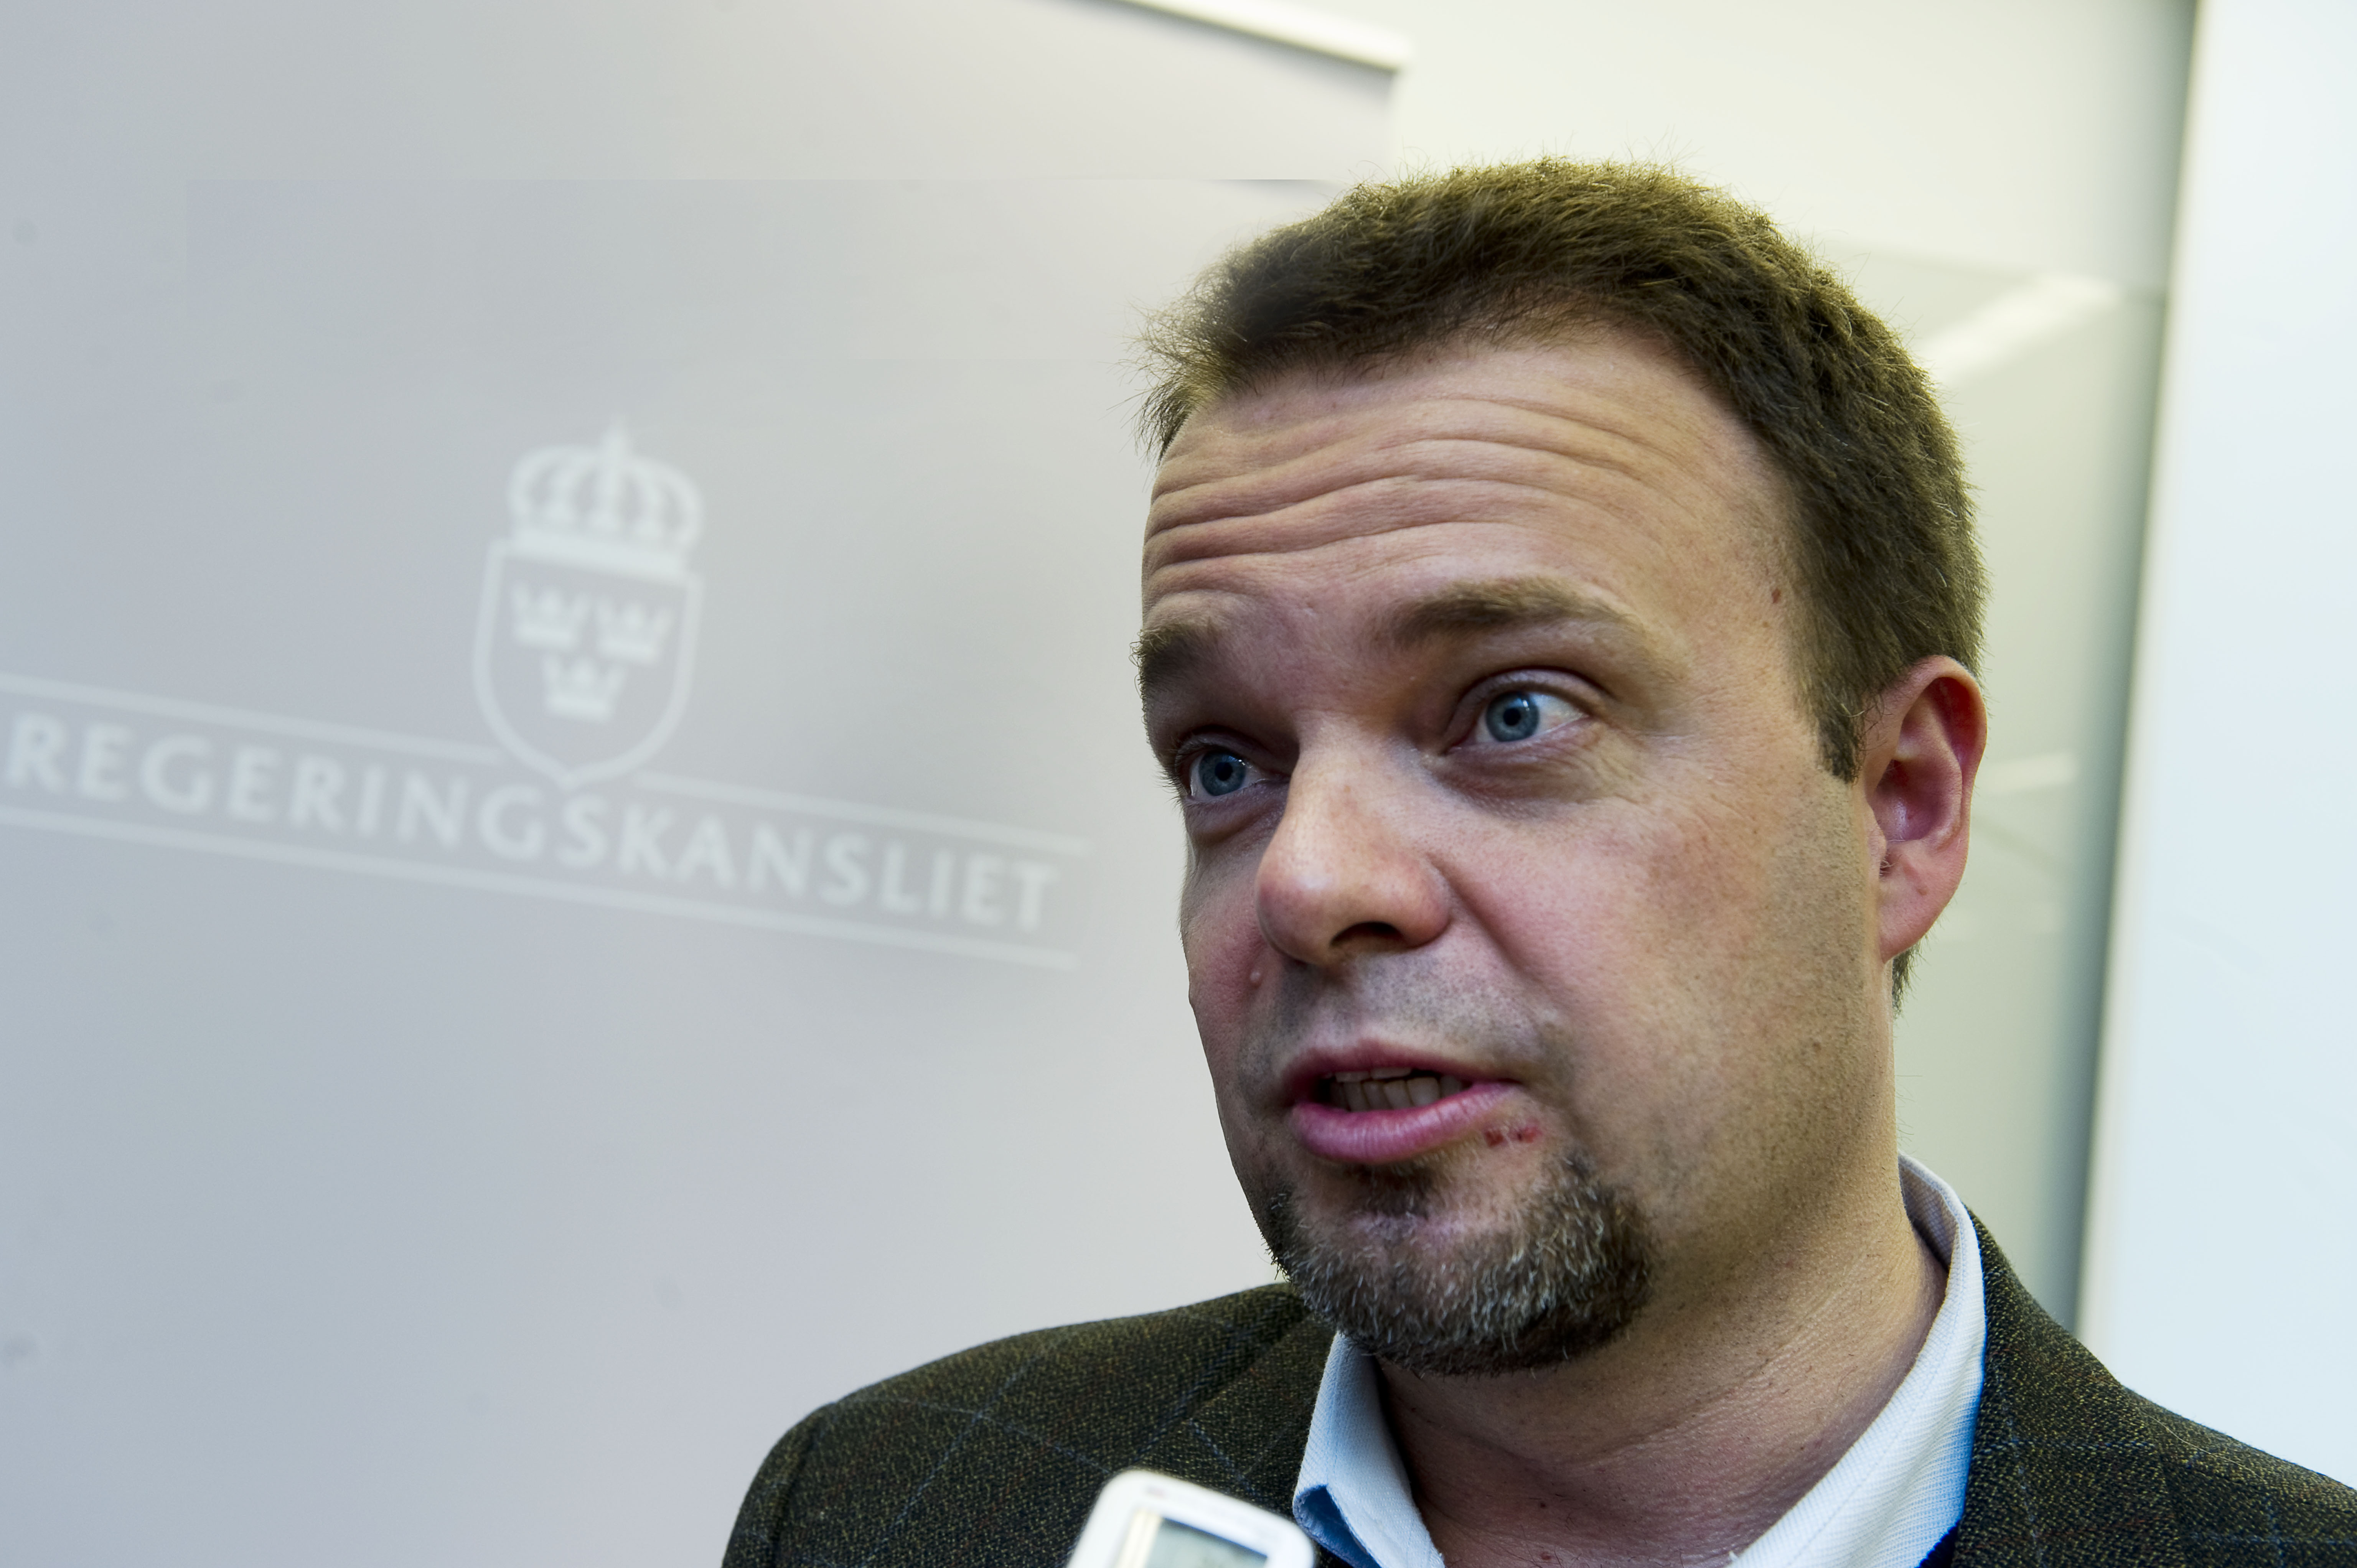 Register, Jobb, Alliansen, Ungdomsarbetslöshet, Politik, Sven Otto Littorin, Riksdagsvalet 2010